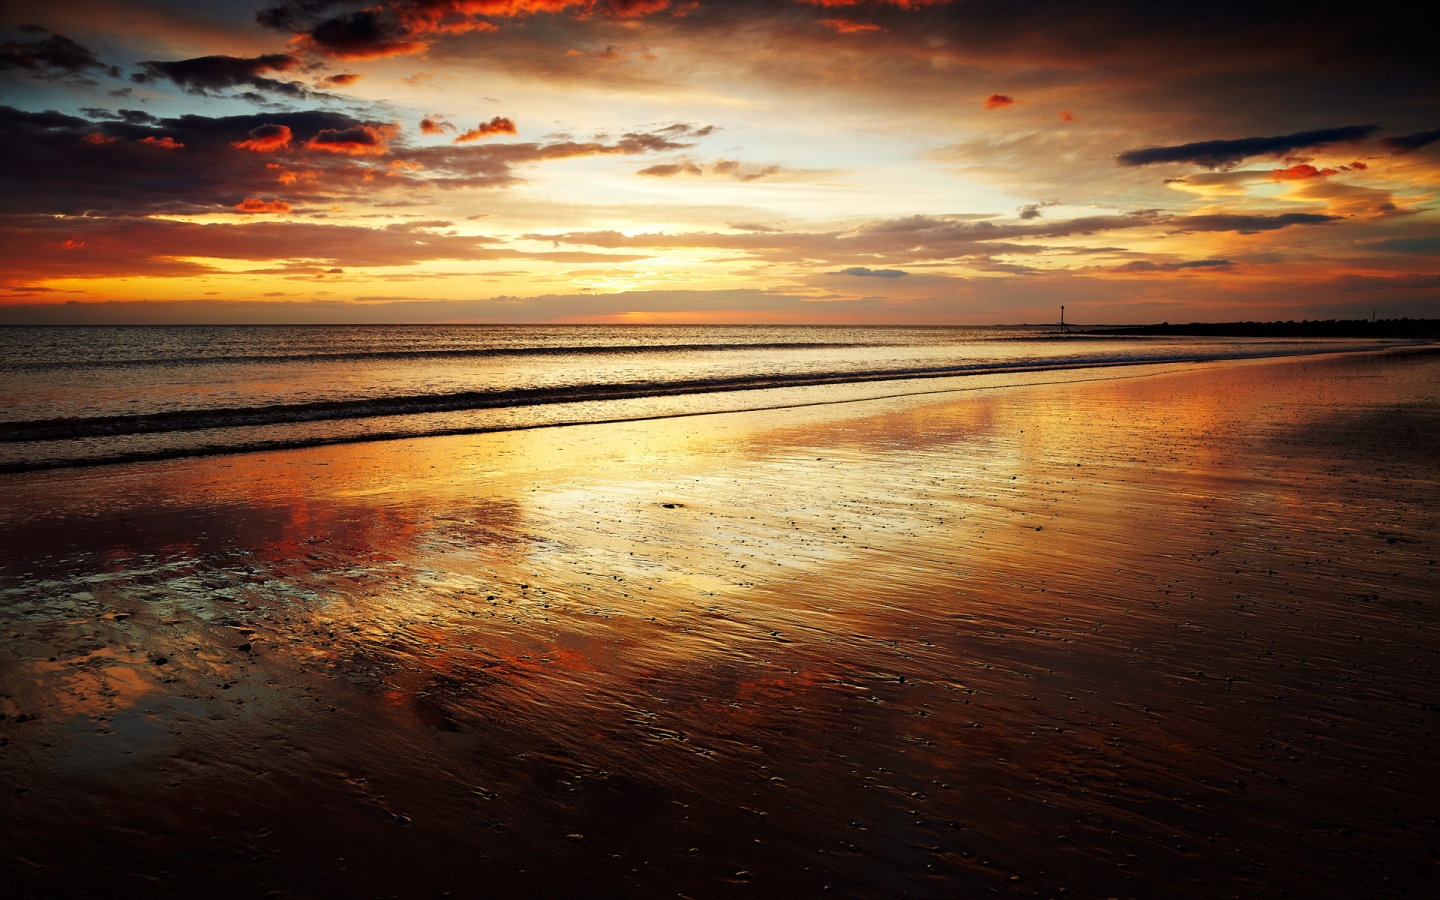 Evening Sunset for 1440 x 900 widescreen resolution